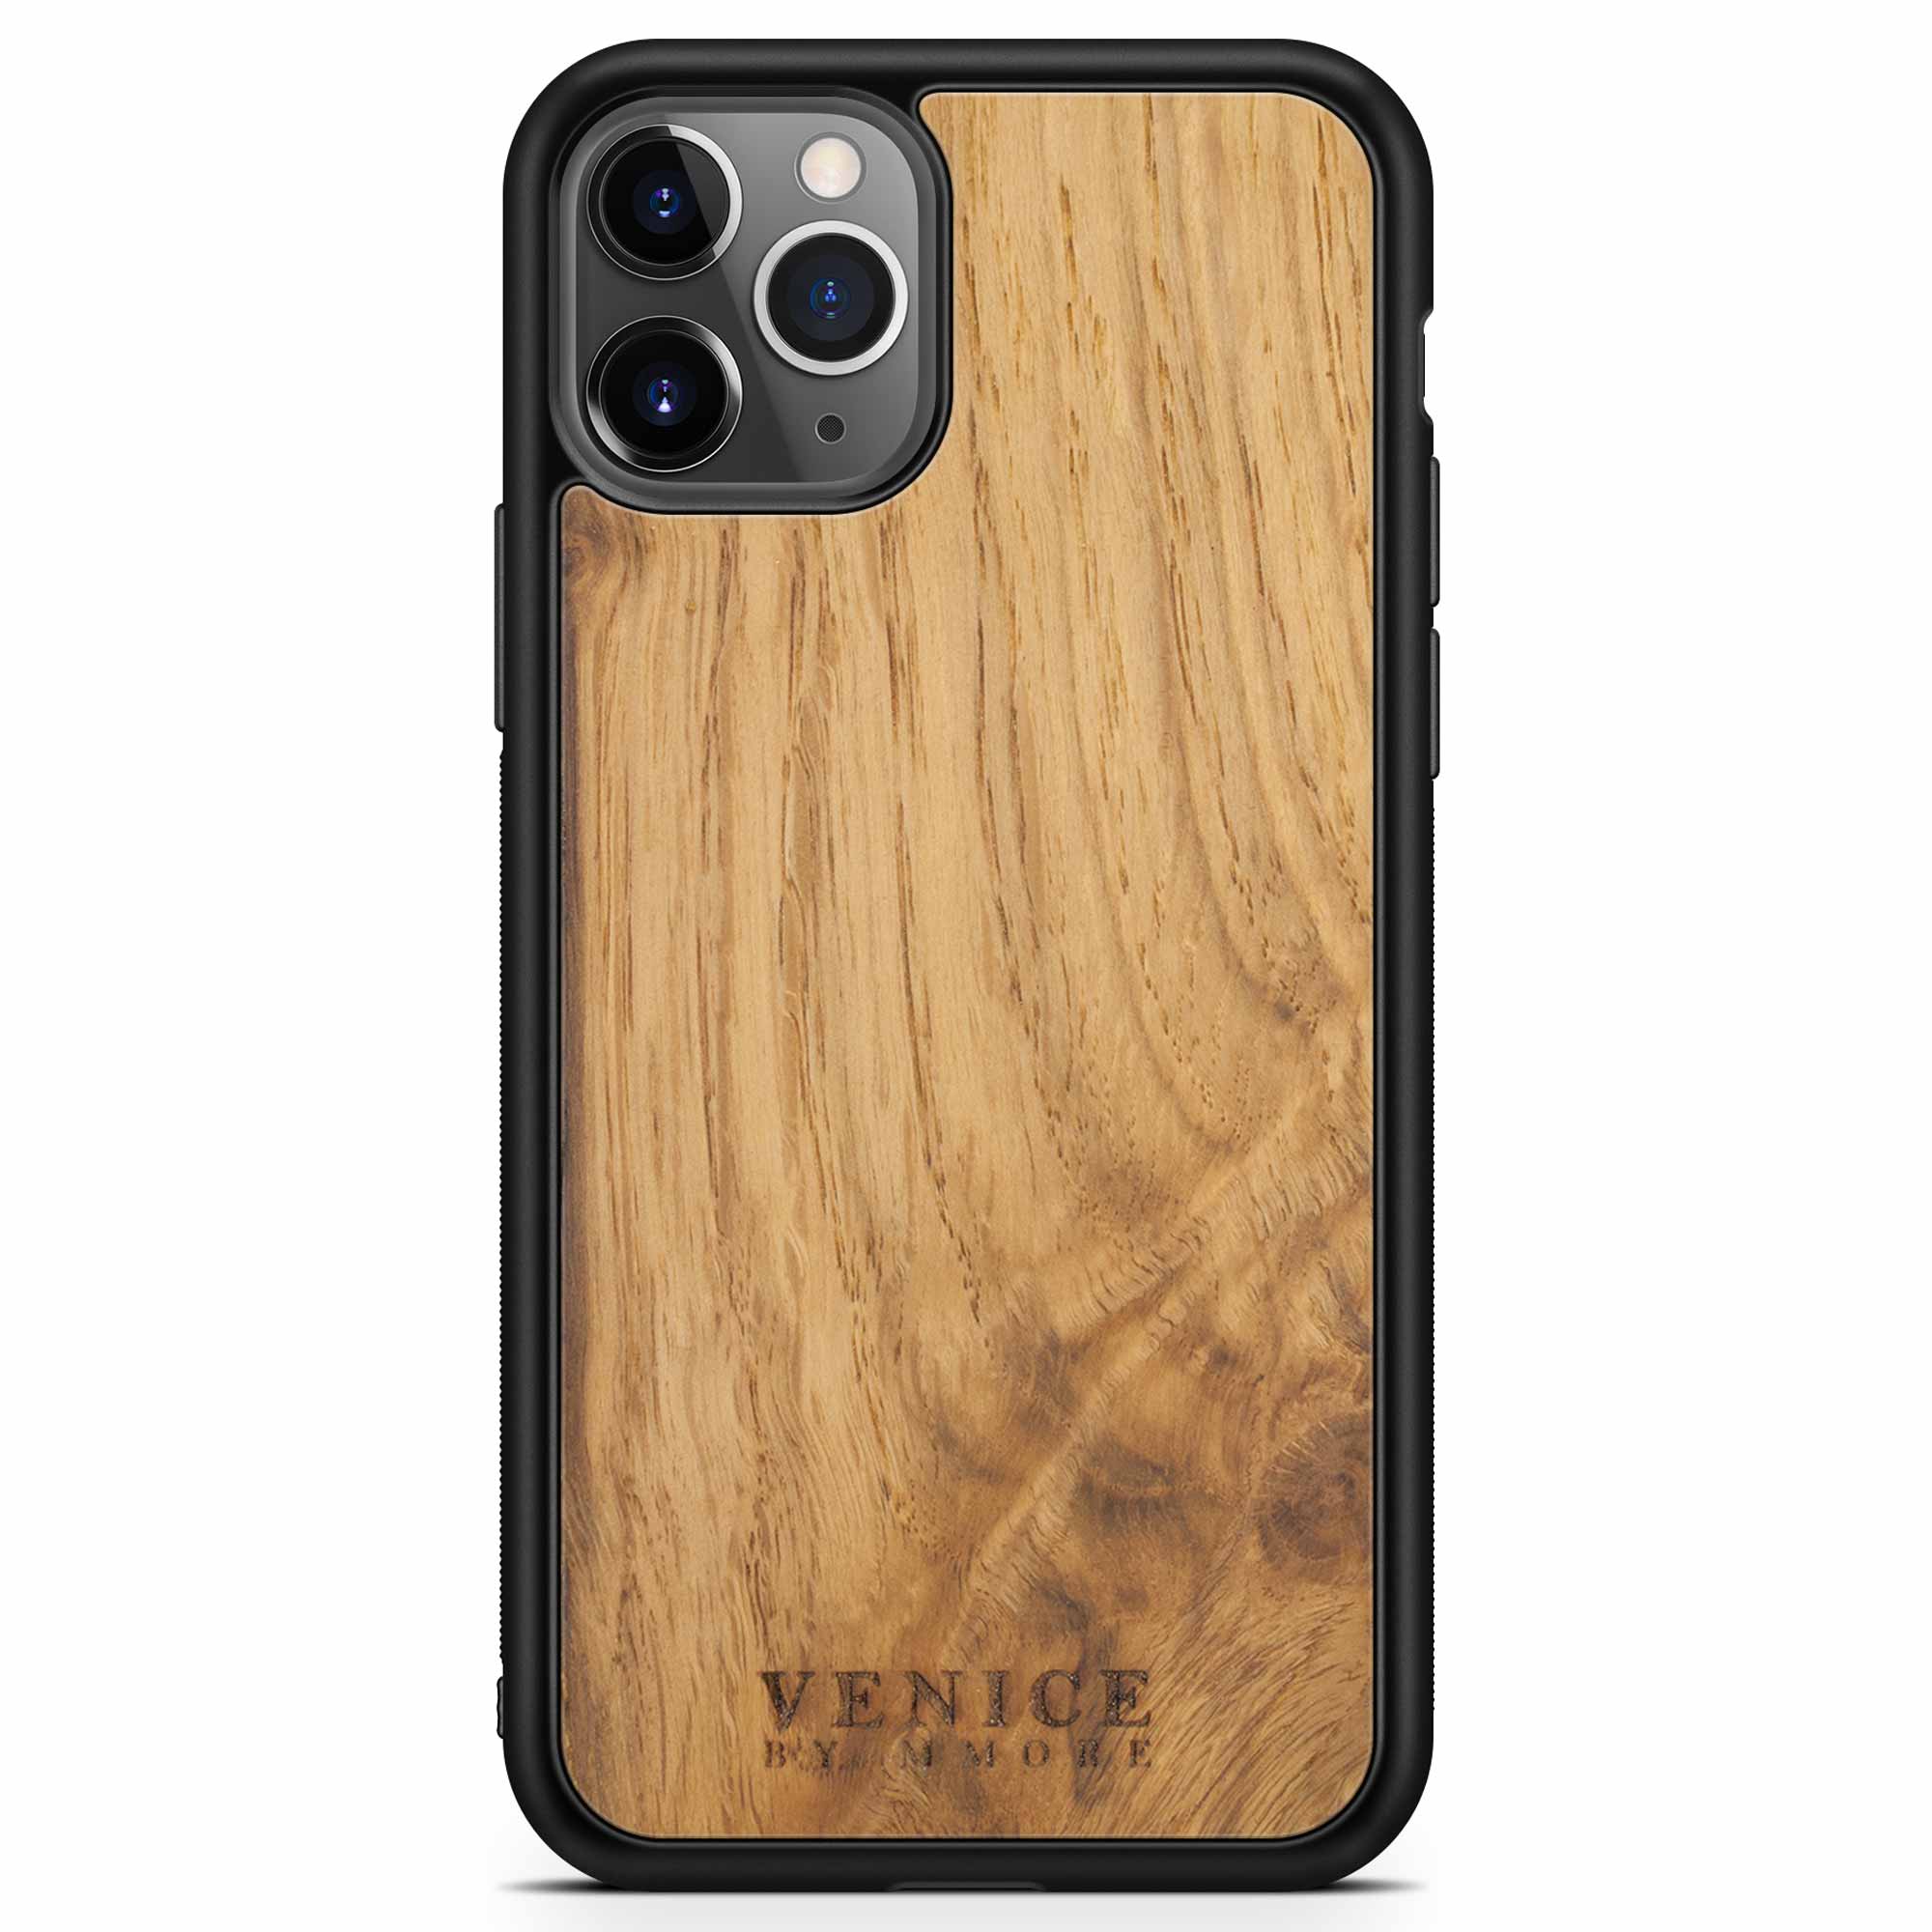 Carcasa de madera con letras venecianas para iPhone 11 Pro Max